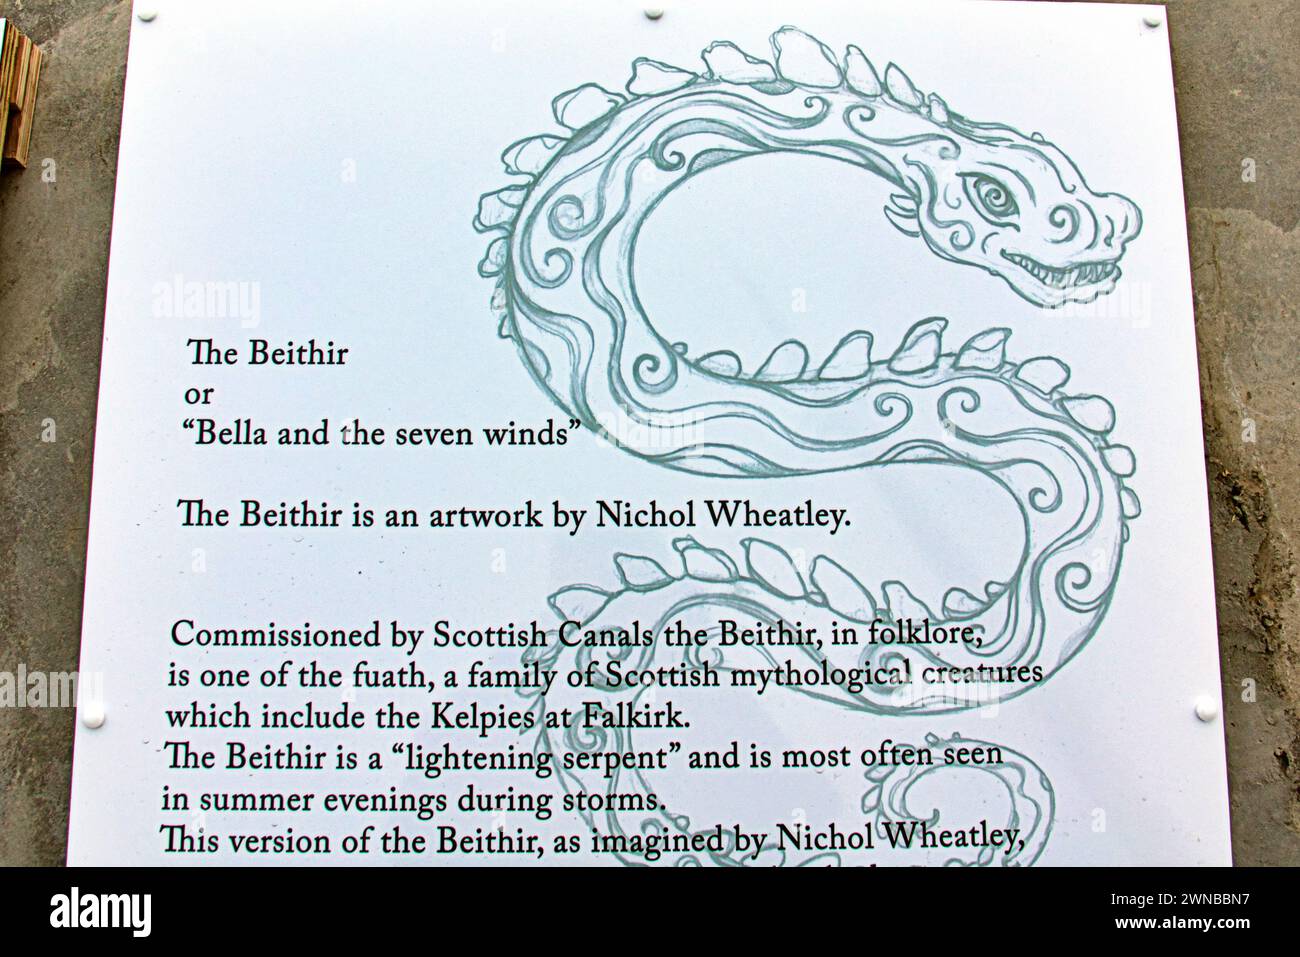 Glasgow, Schottland, Großbritannien. 1. März 2024: Heute wird die 120 Fuß lange Schlange Bella the Beithir fertiggestellt und enttarnt, das Kopfstück von Schottlands größtem Mosaikkunstprojekt. „Pretty Things“ Bella Tribut an der Stockingfield Bridge, Bella, die Schlange, benannt nach der Schöpfung des ikonischen Autors Alisdair Gray in seinem Buch, das den Oscar-Film hervorbrachte. Das Community-basierte Kunstprojekt schuf es unter der Leitung eines Freundes des Autors Nichol Wheatley, der es als Atribute nach Bella Baxter benannte. Credit Gerard Ferry/Alamy Live News Stockfoto